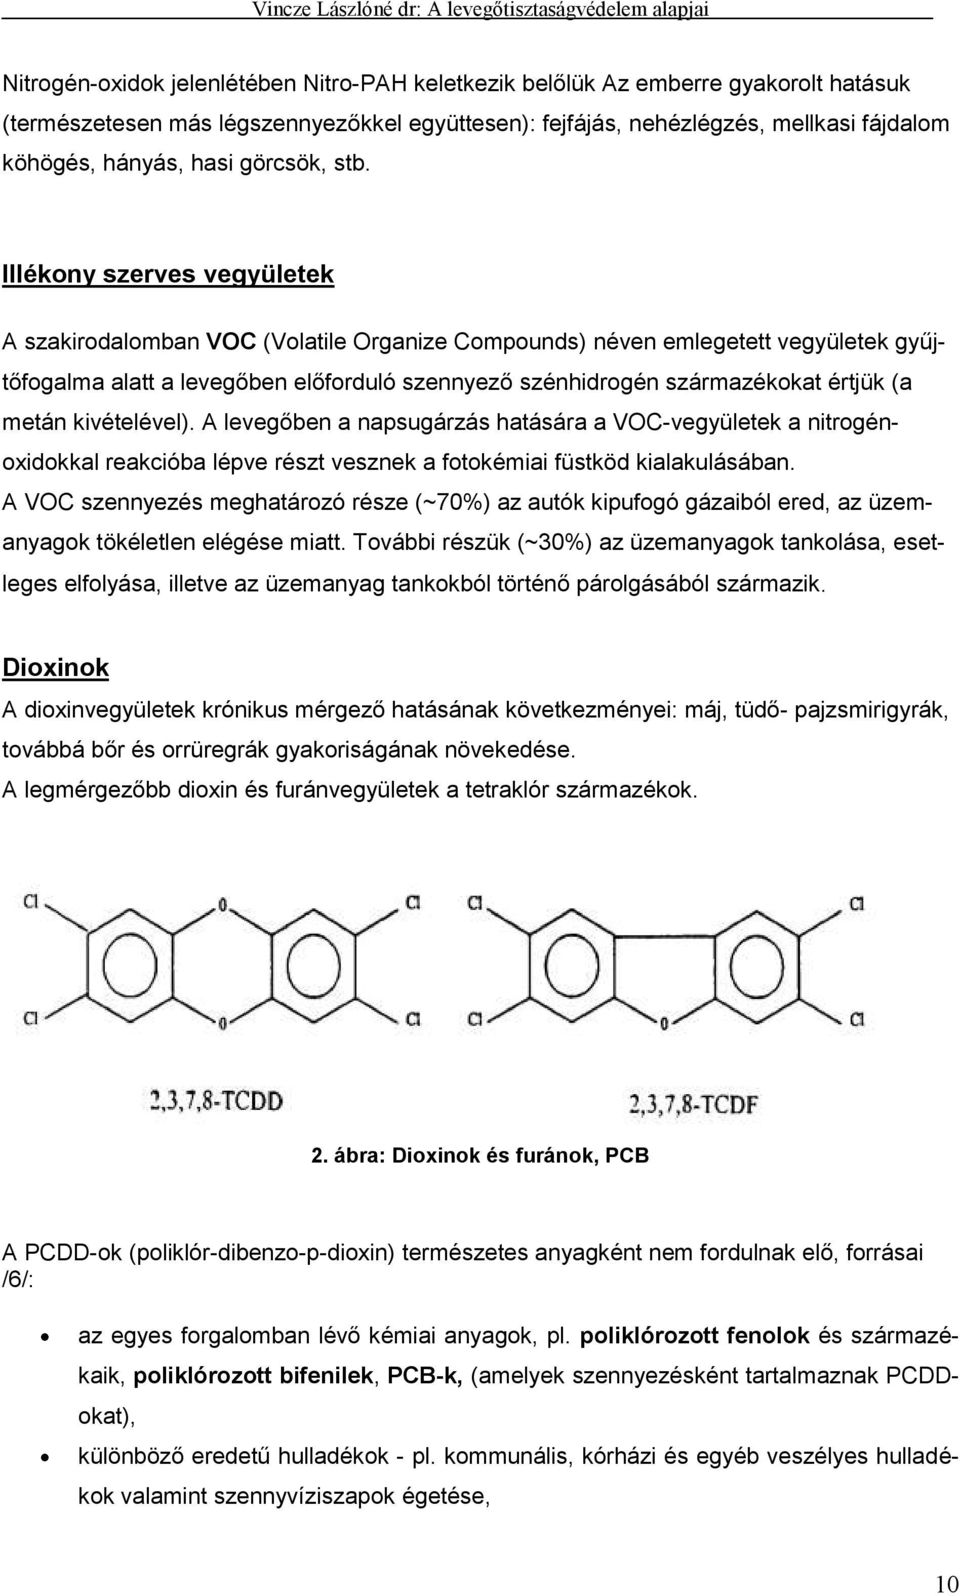 Illékony szerves vegyületek A szakirodalomban VOC (Volatile Organize Compounds) néven emlegetett vegyületek gyűjtőfogalma alatt a levegőben előforduló szennyező szénhidrogén származékokat értjük (a